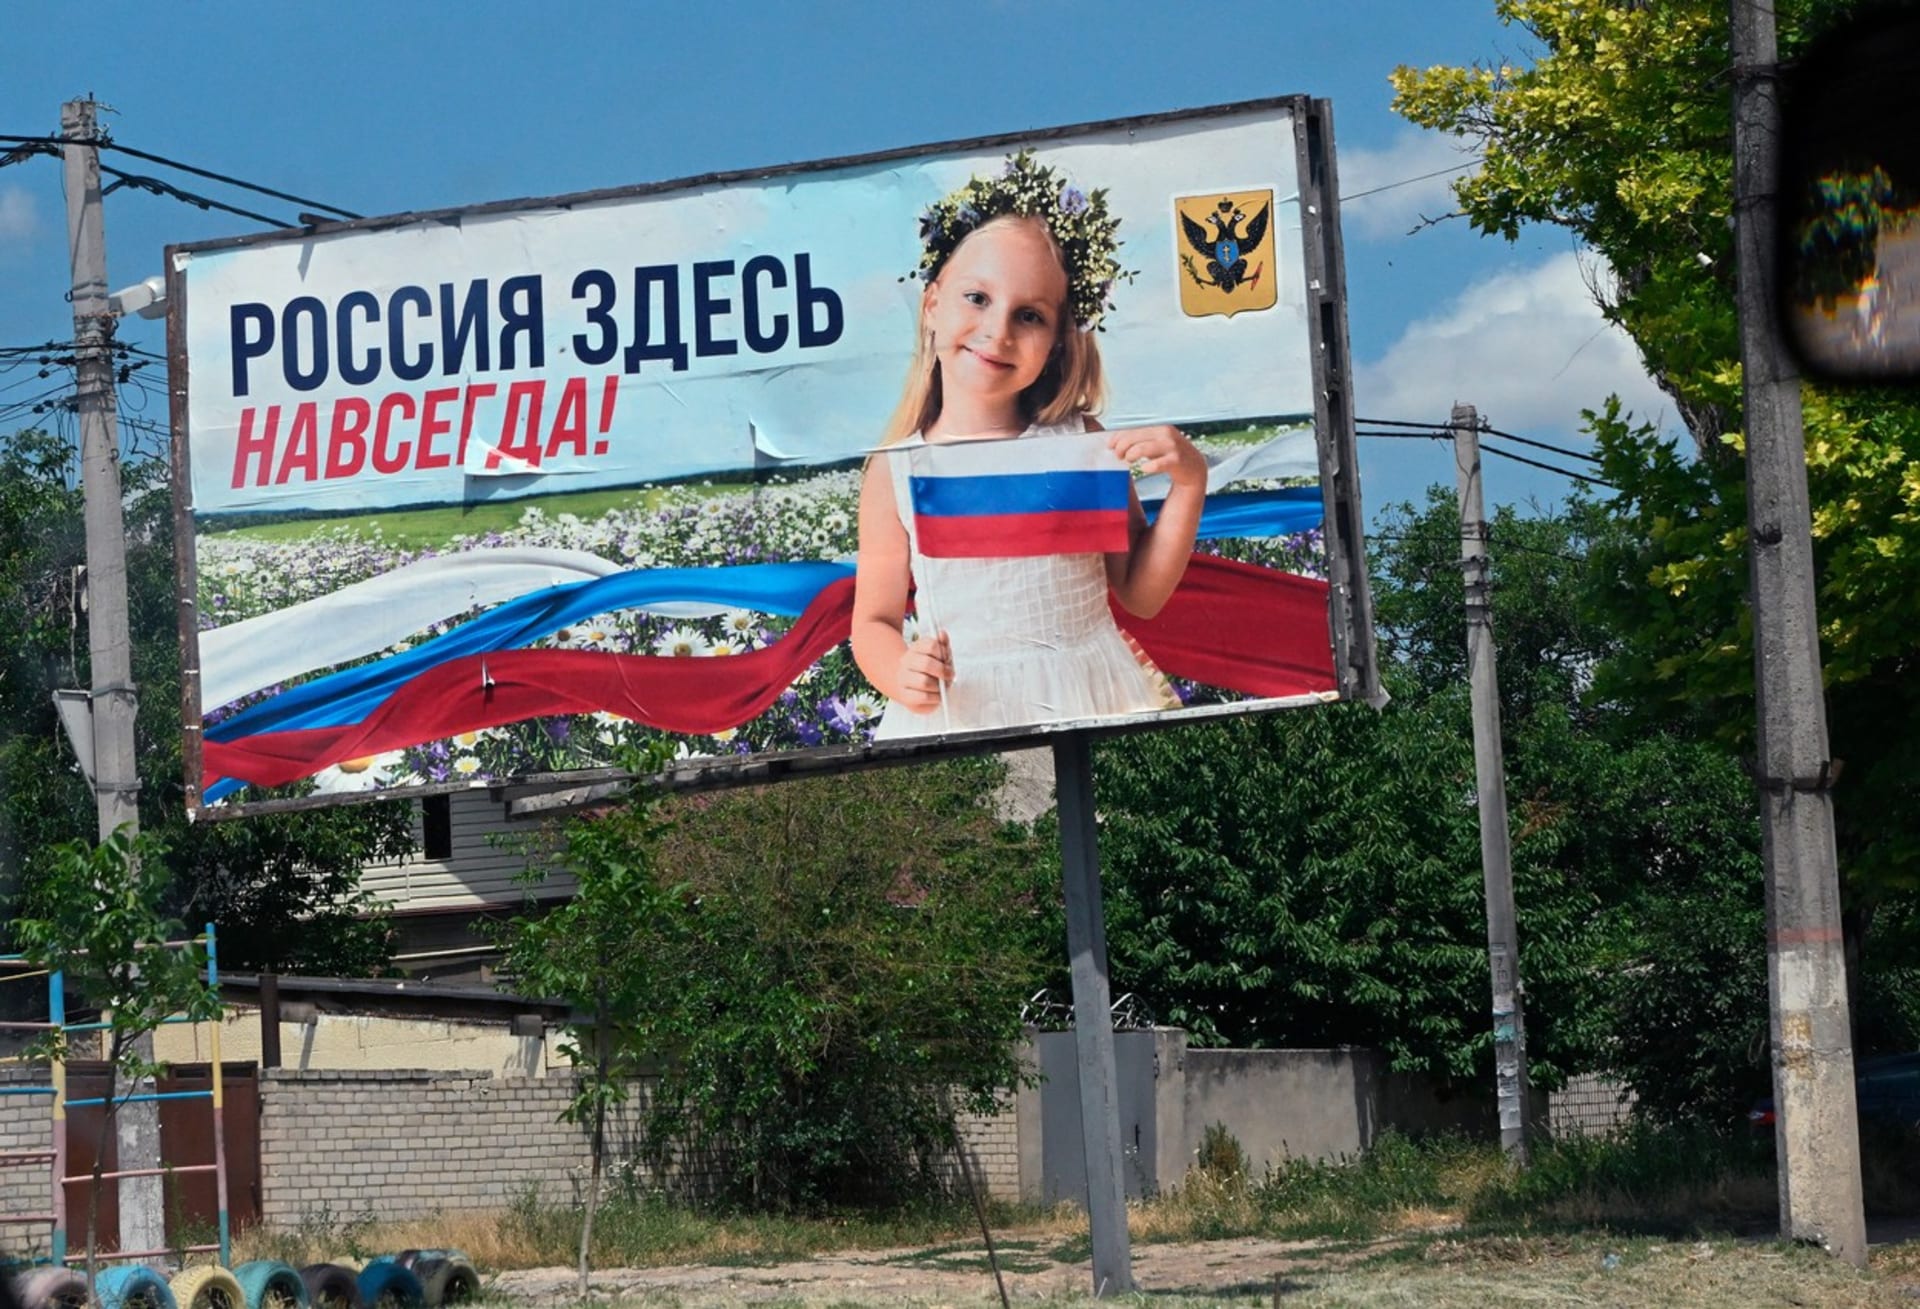 Chersonská oblast je plná různých reklam a billboardů s ruskou propagandou.